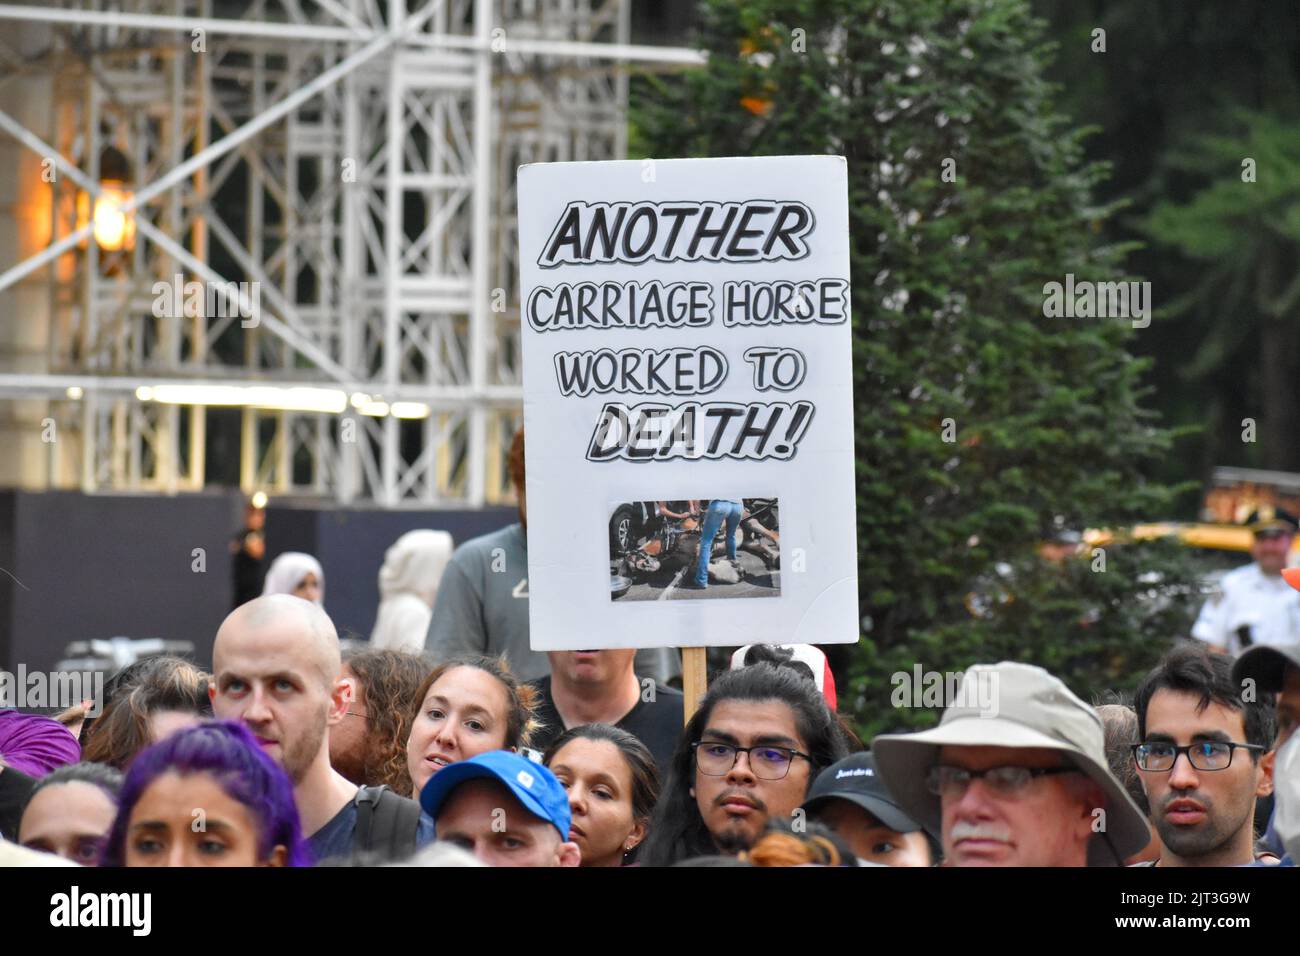 Il partecipante al Rally ha in mano un cartello anti-abuso di animali davanti alla fontana Pulitzer a Manhattan per chiedere la fine dell'abuso di carrozza a cavallo a New Yor Foto Stock